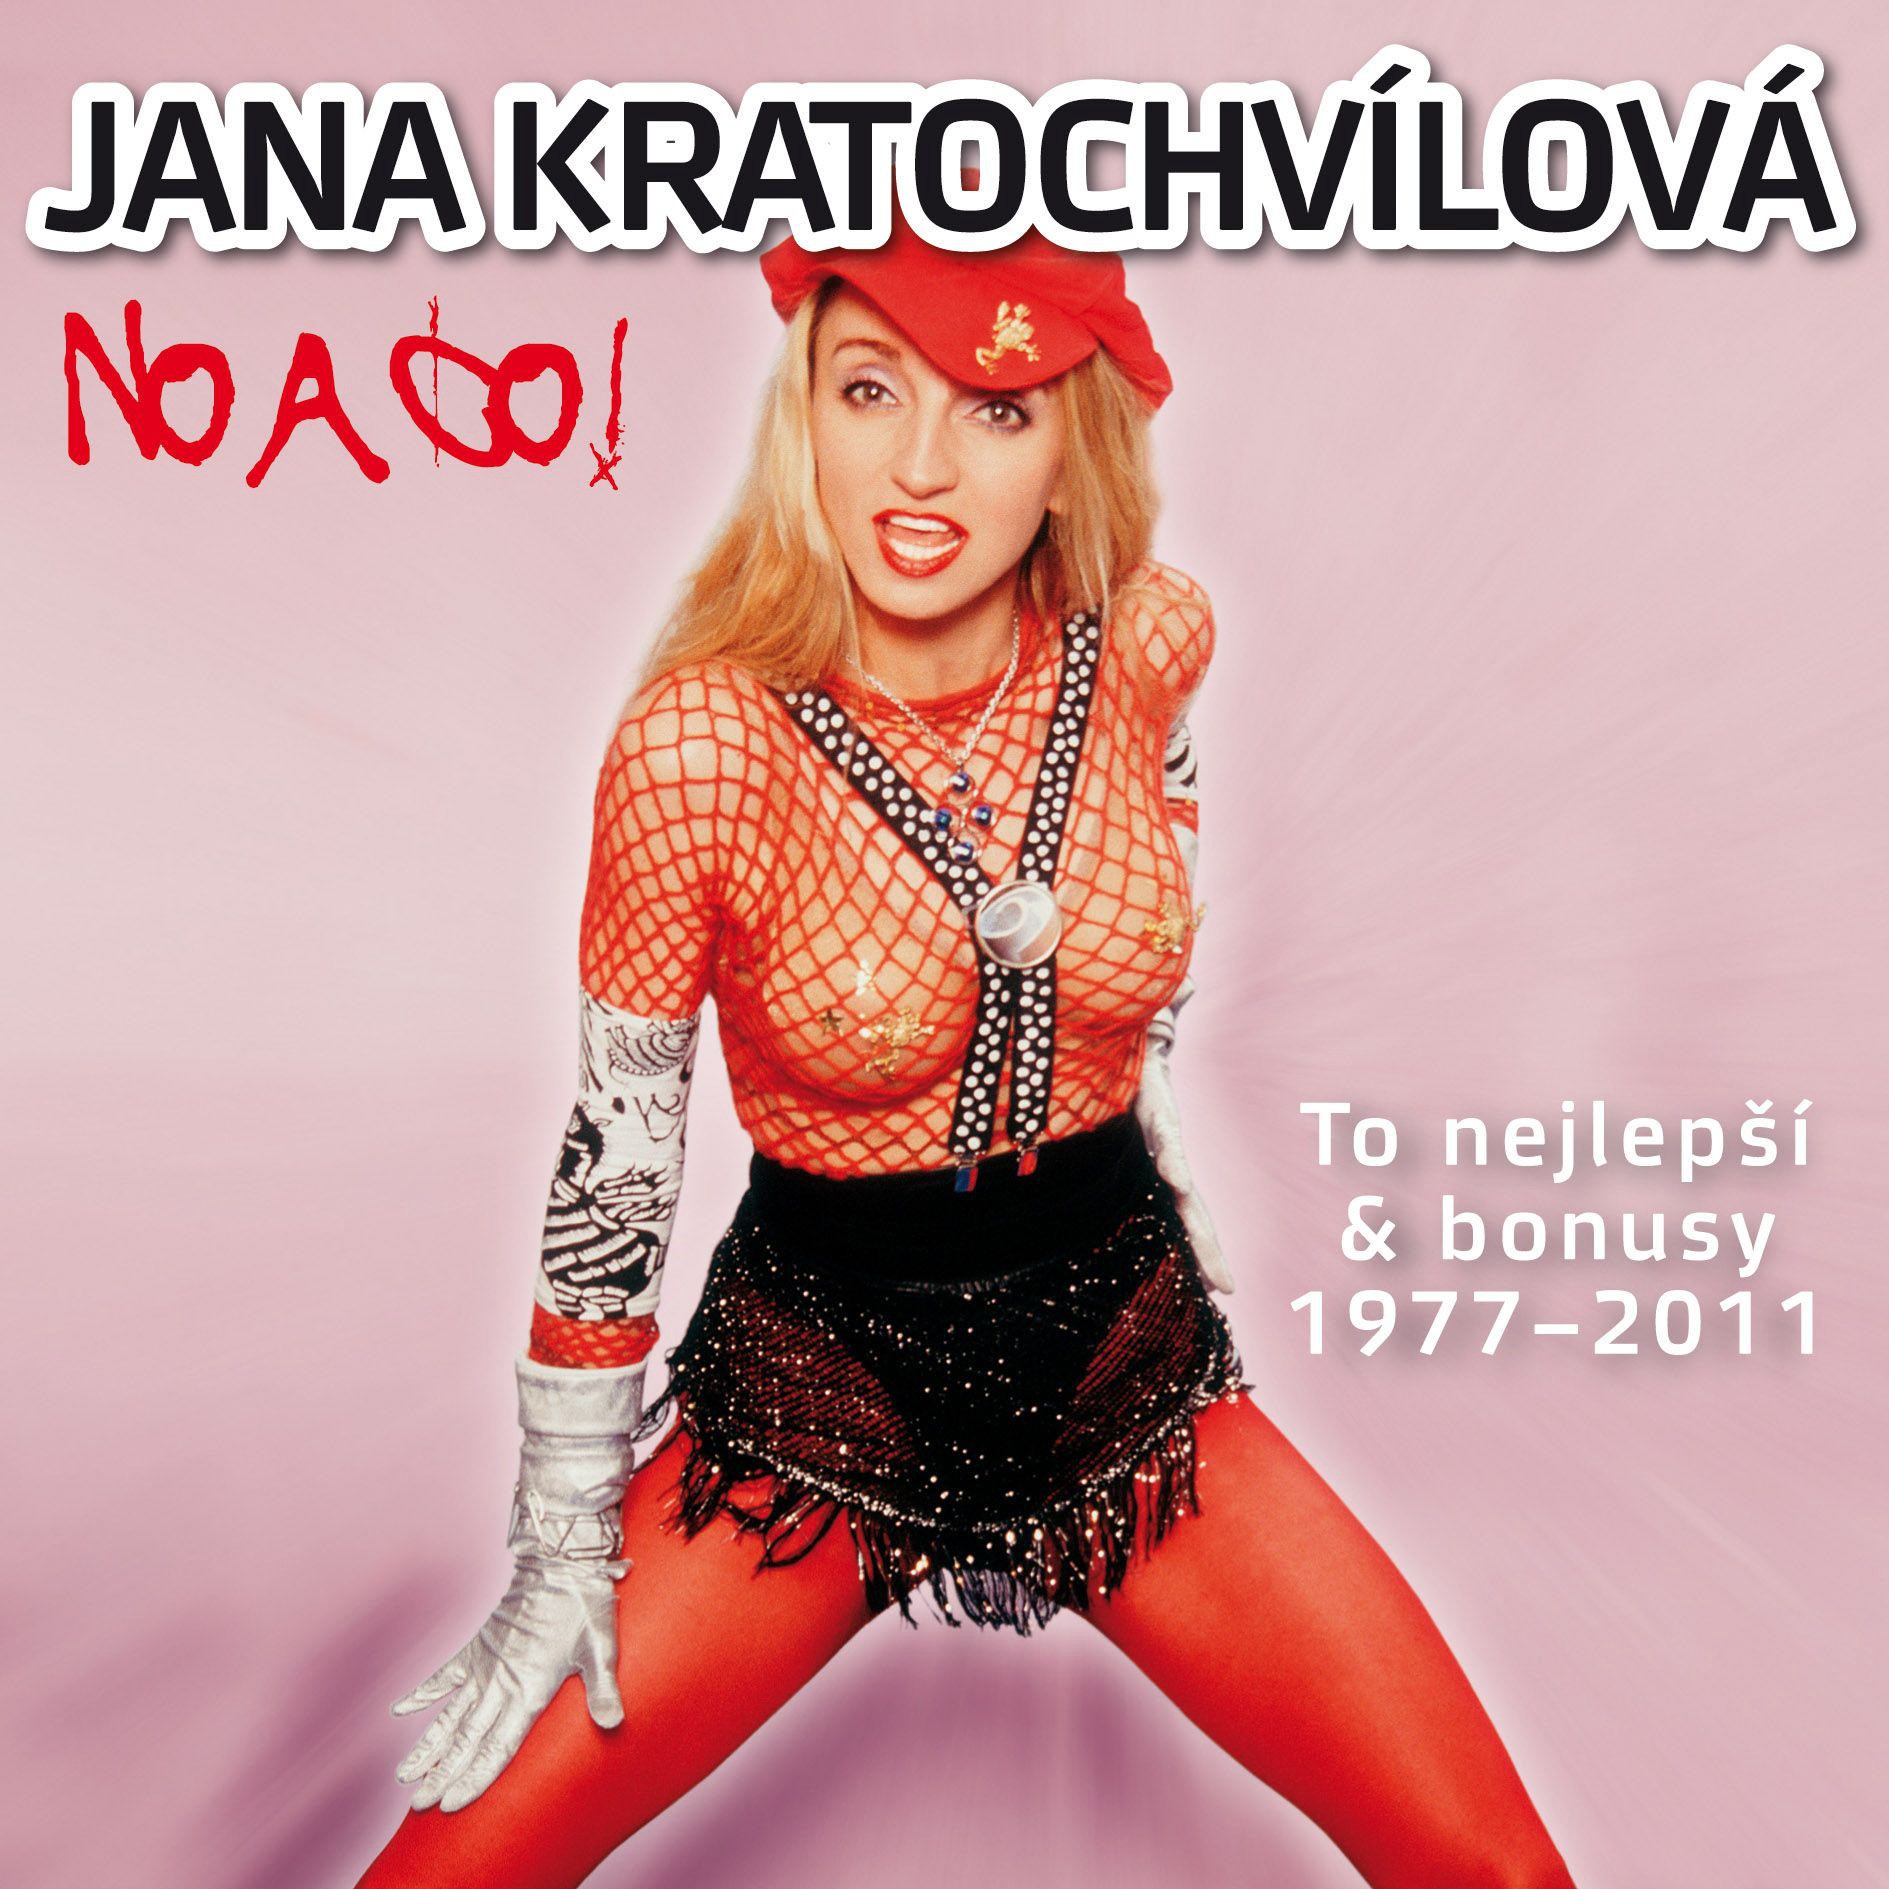 CD Shop - KRATOCHVILOVA JANA TO NEJLEPSI & BONUSY 1977 - 2011